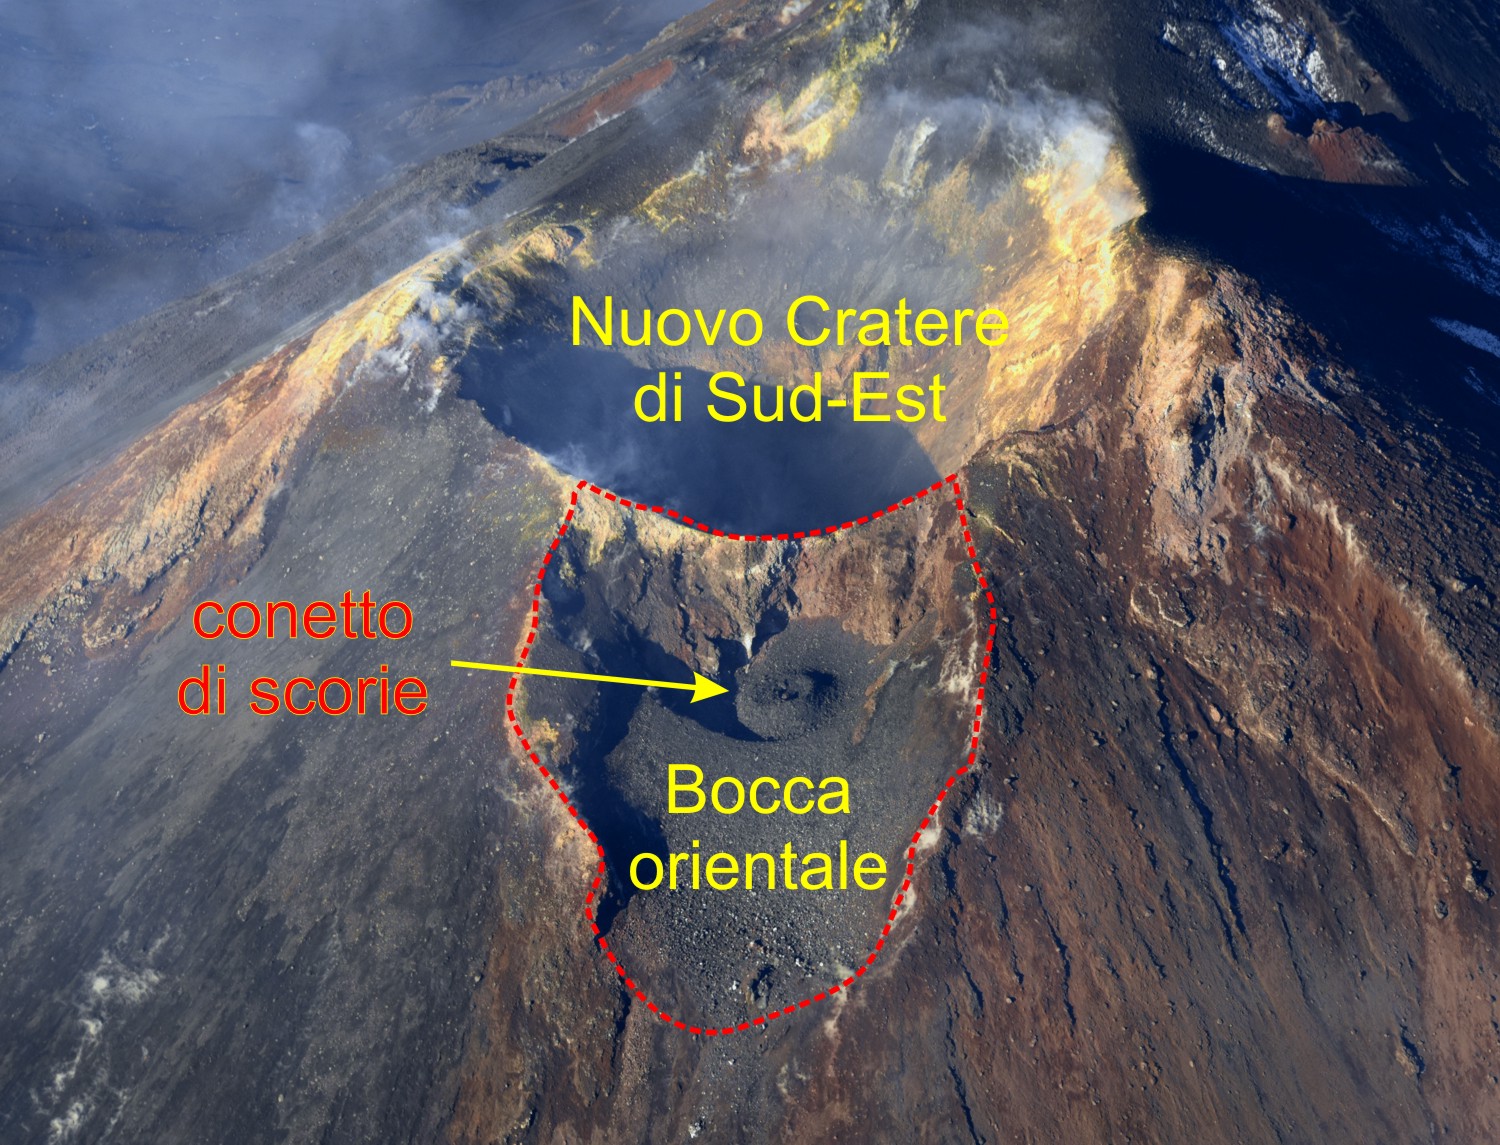 Bocca orientale del Nuovo Cratere di Sud-Est